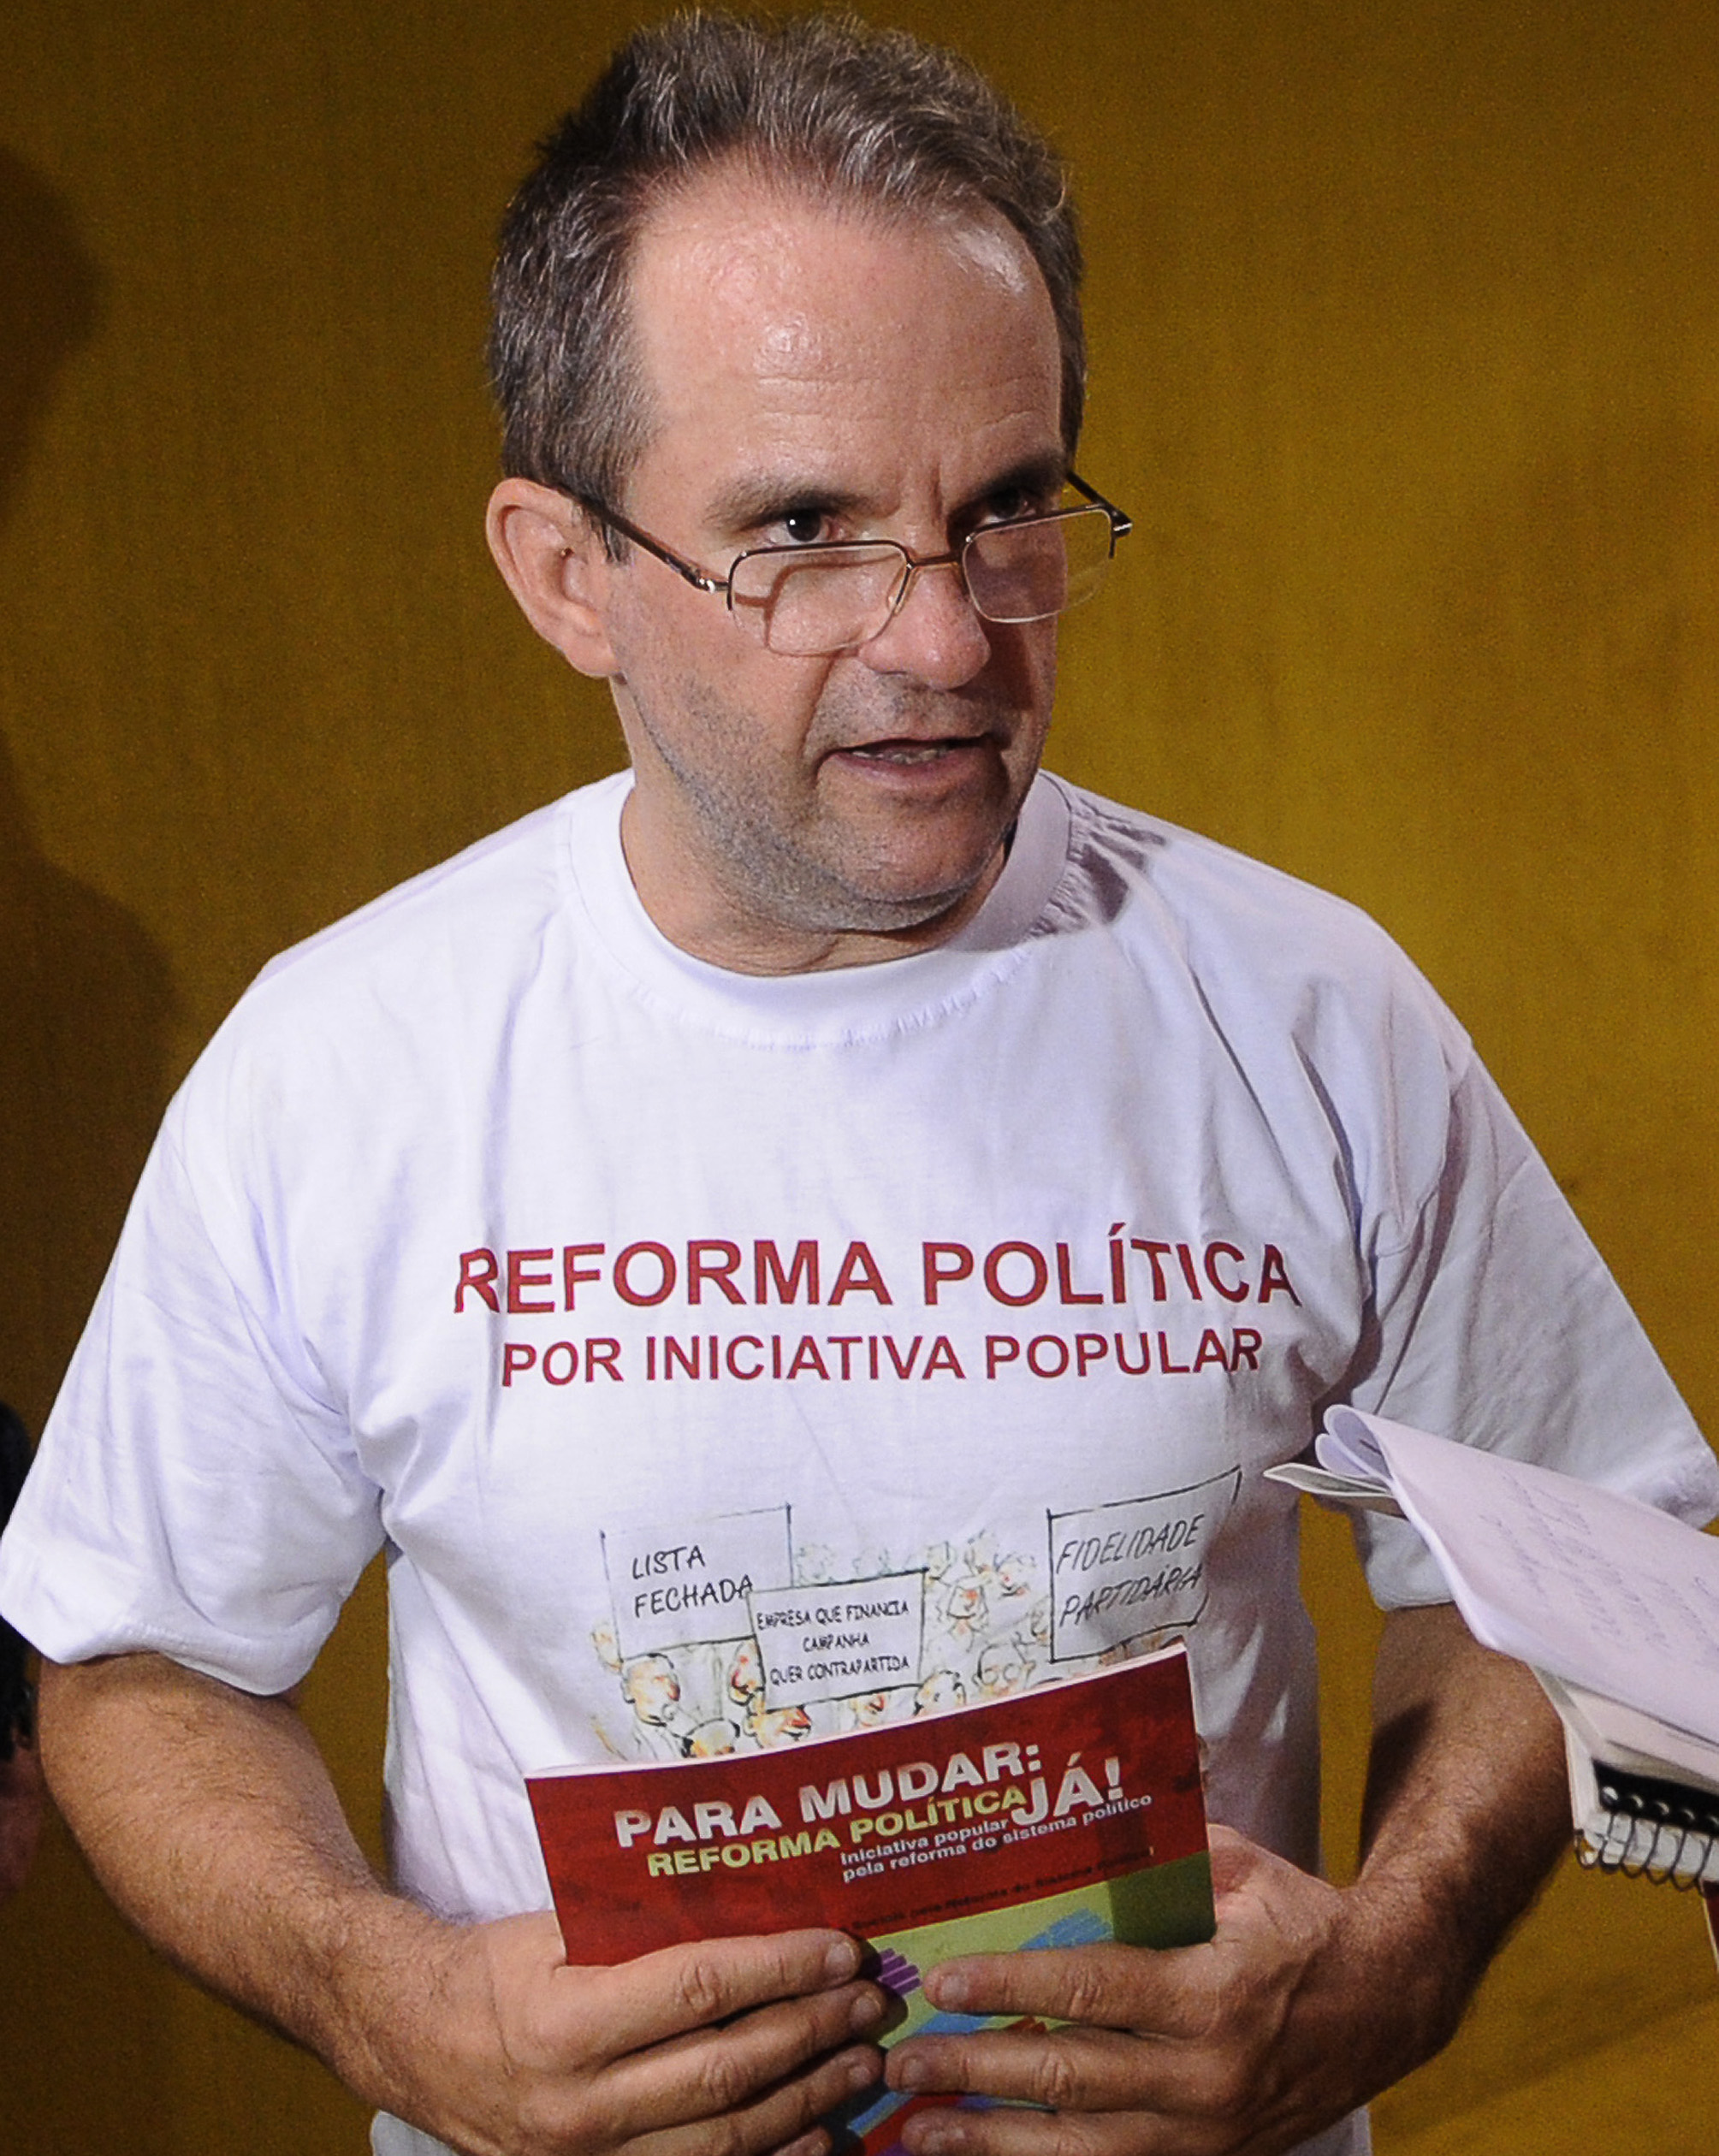 Movimentos Sociais lanam campanha pela reforma poltica. Entrevista do dirigente da INESC ( Instituto de Estudos Socioeconomicos), Jos Antonio Moroni.